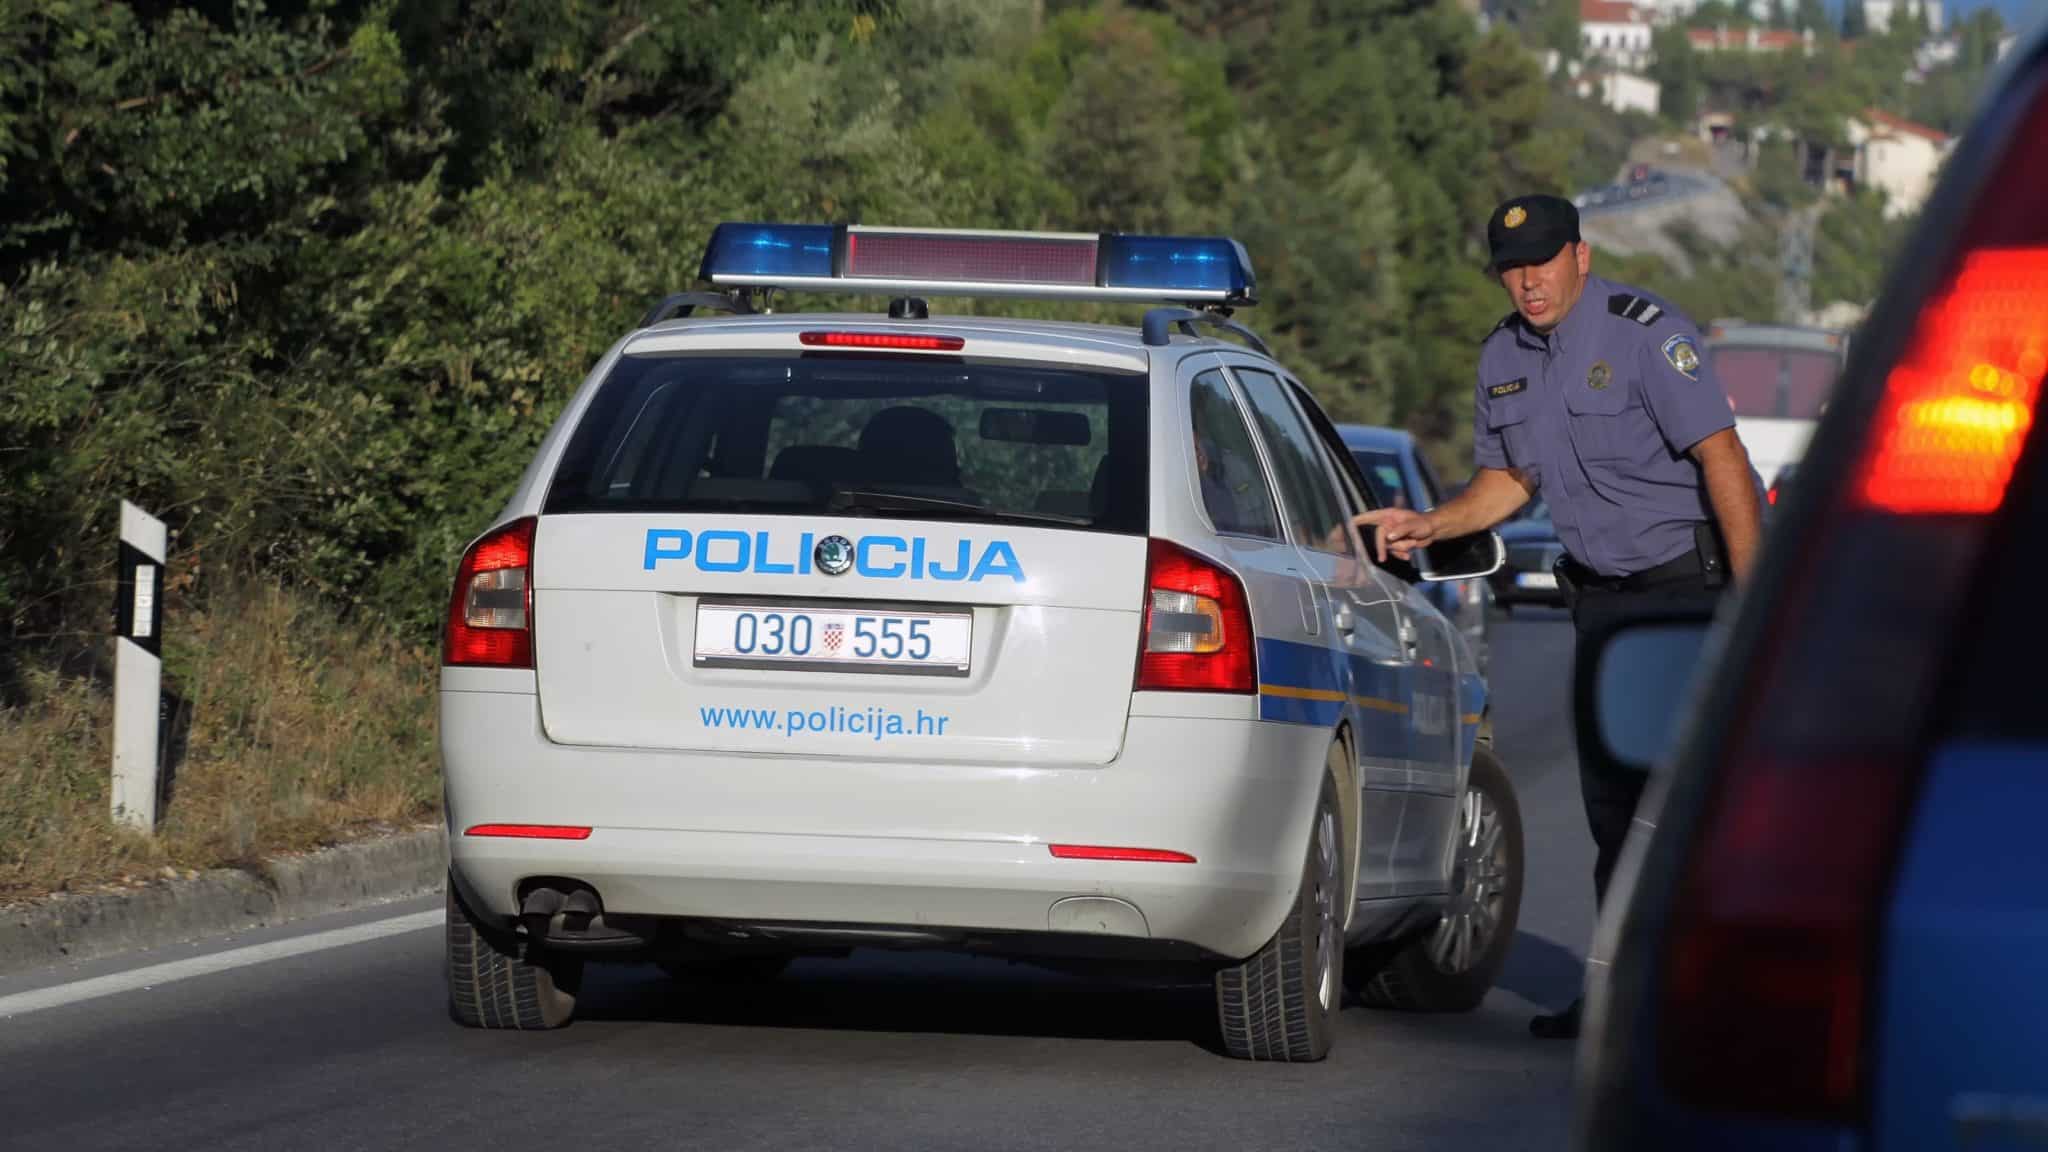 Zadar: Tijekom prometne kontrole kod 40-godišnjaka otkrivena krivotvorena vozačka dozvola